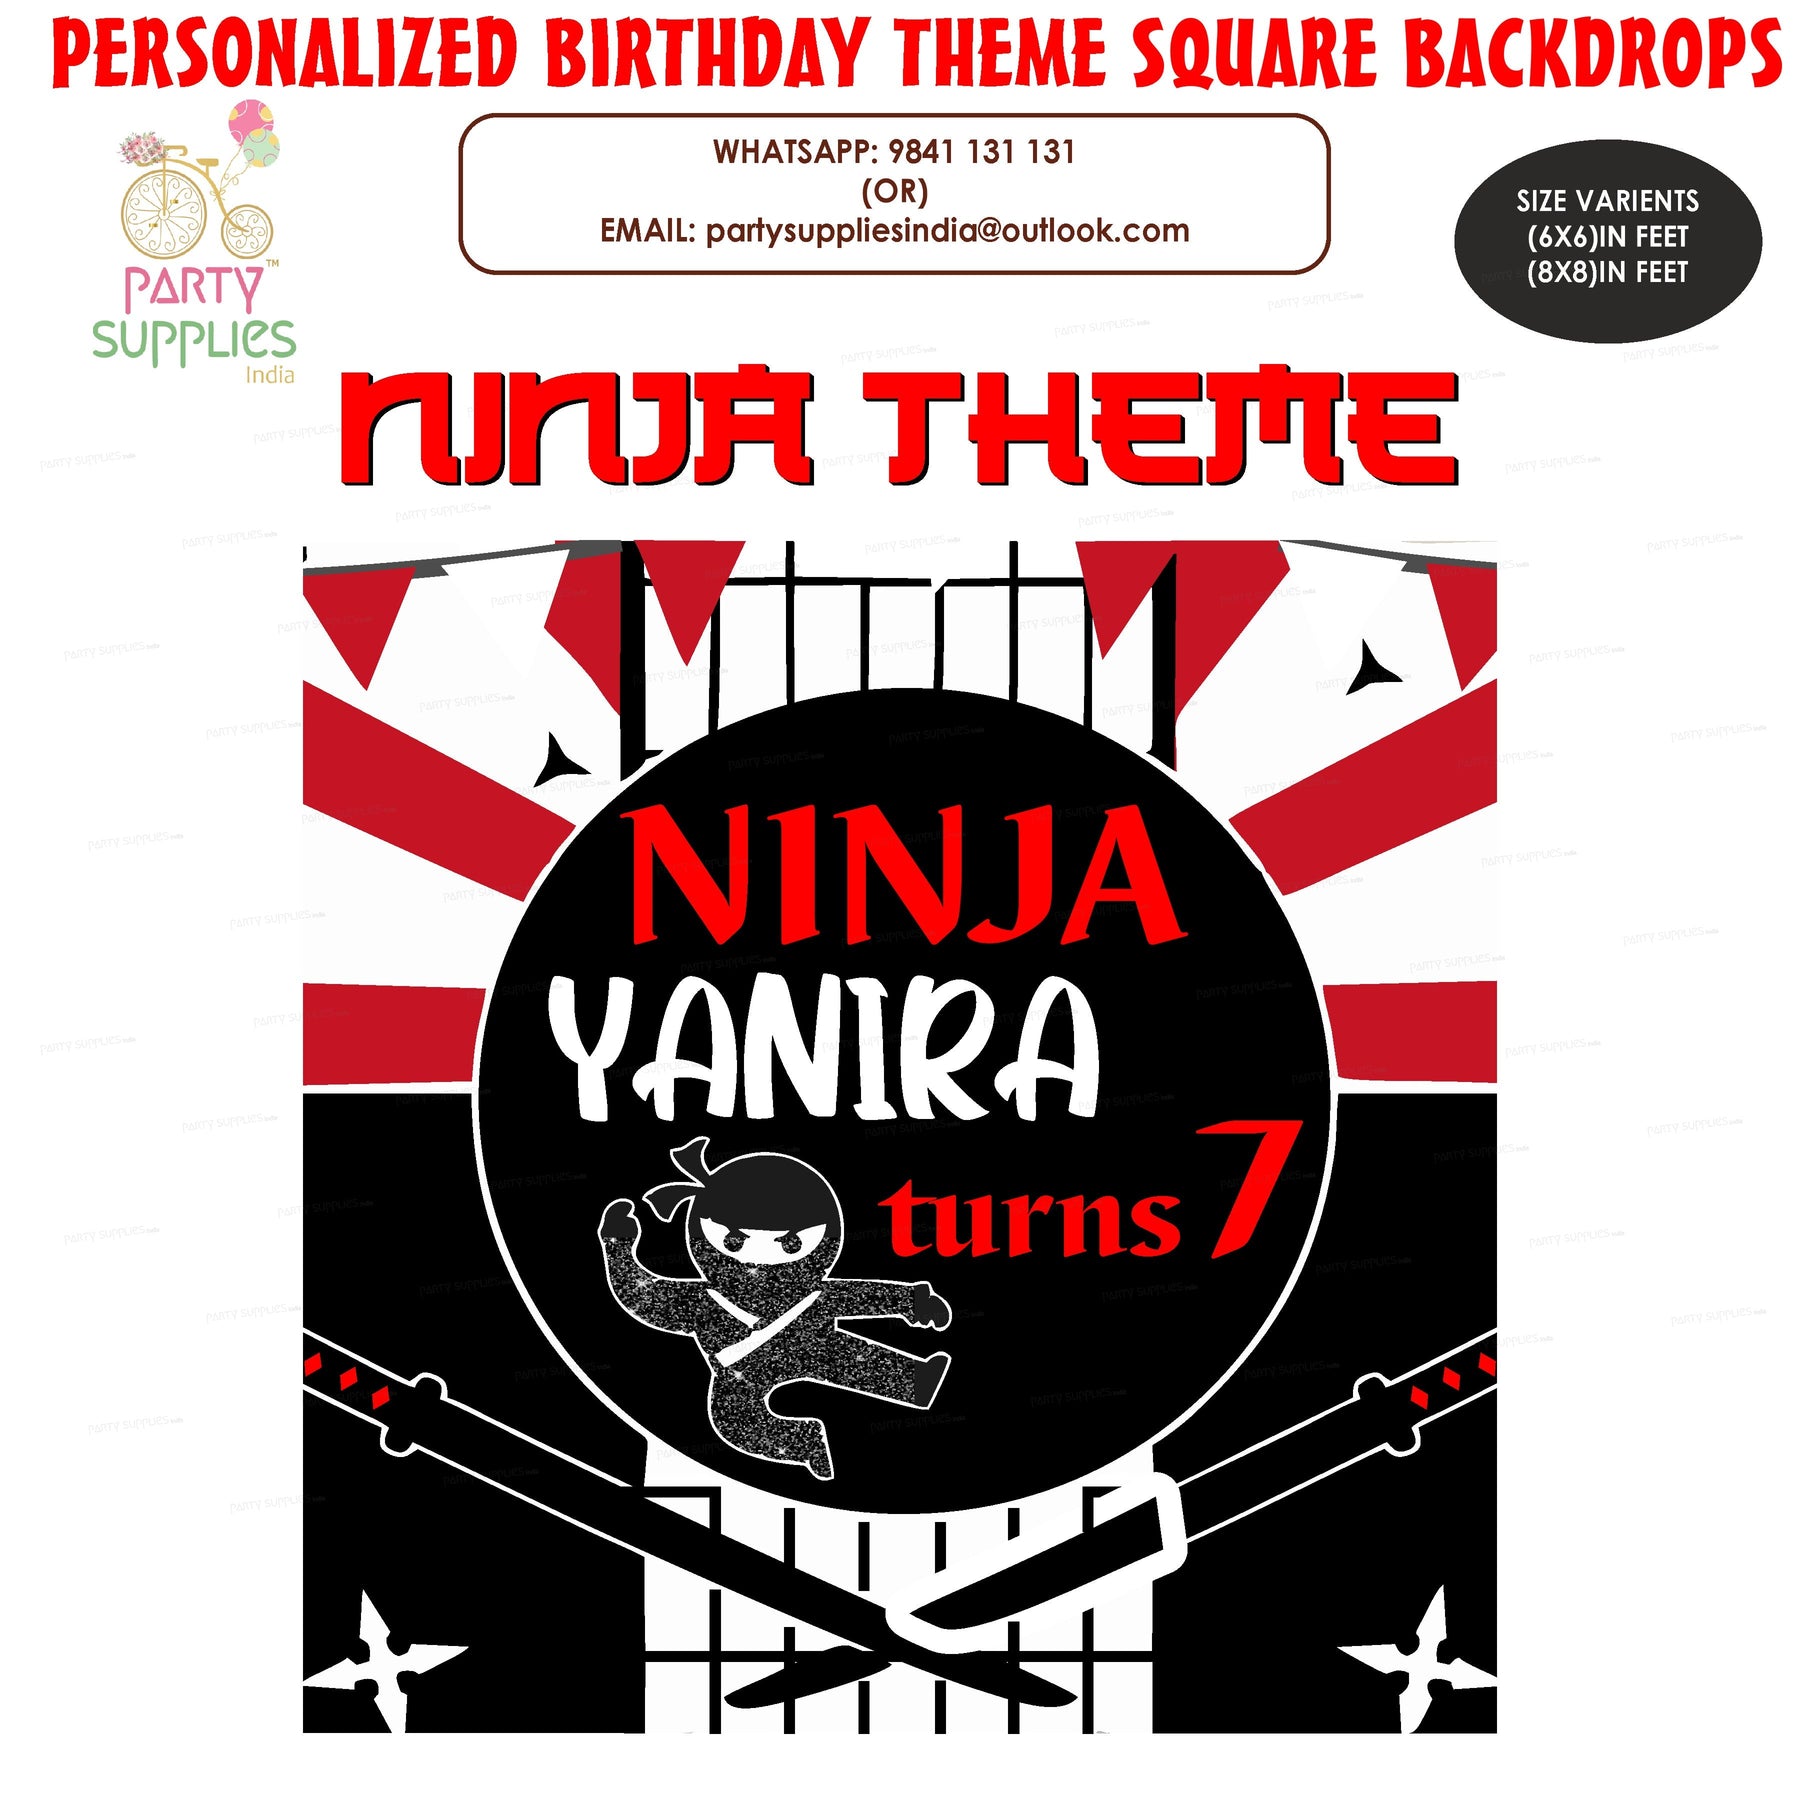 PSI Ninja Theme Personalized Square Backdrop